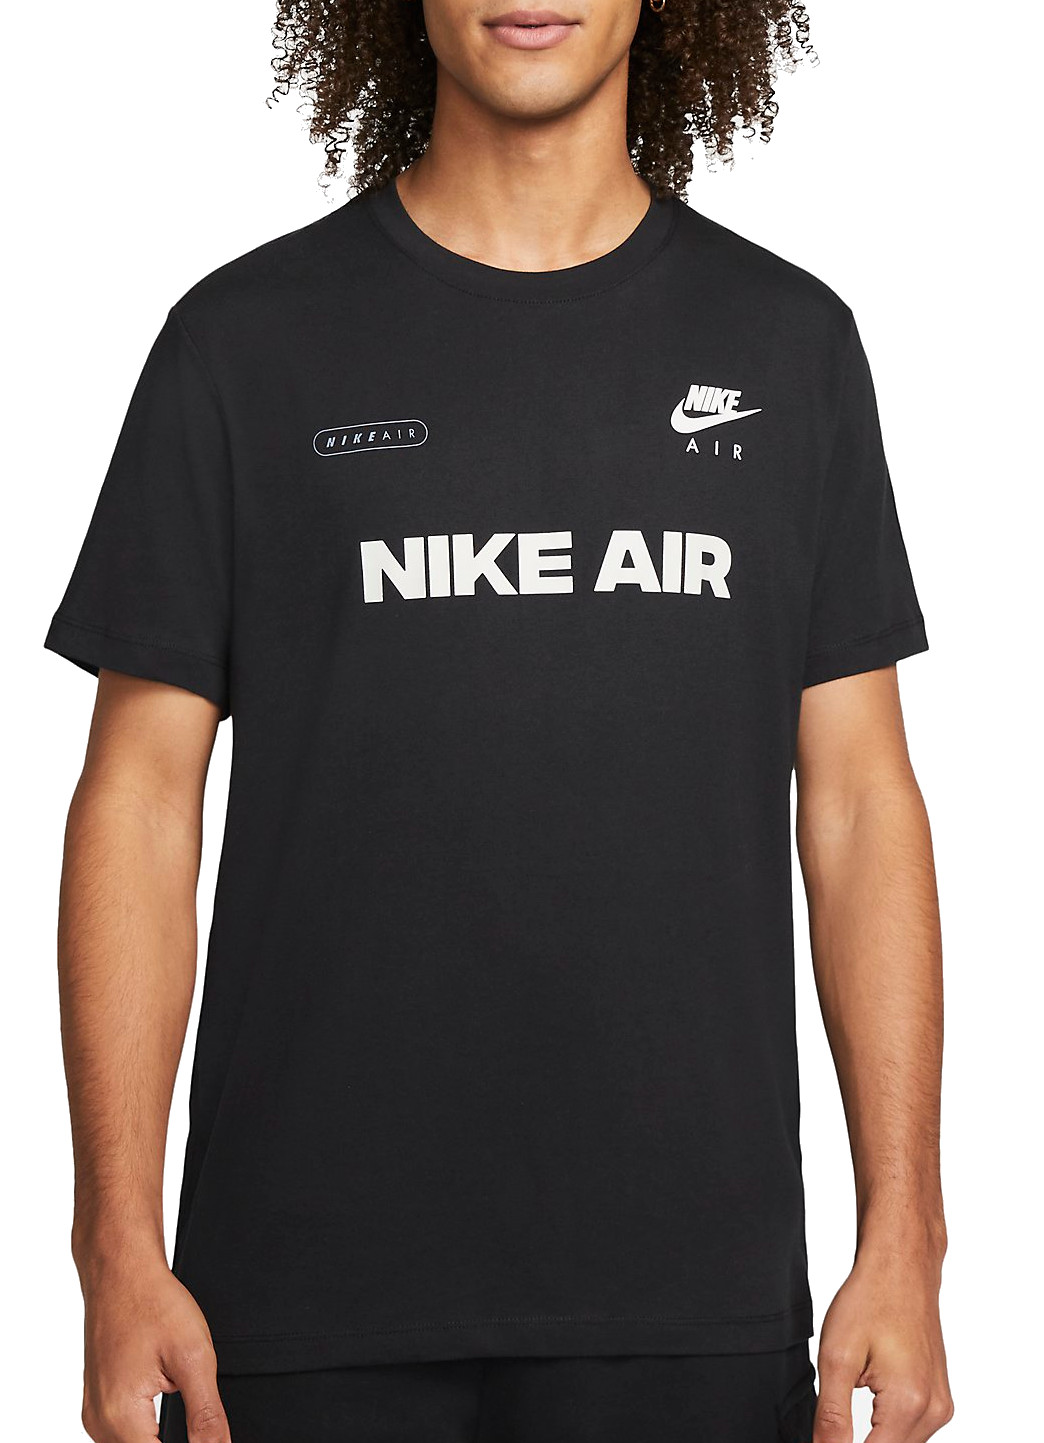 sonrojo texto enfermero Camiseta Nike Air Style - Top4Fitness.es